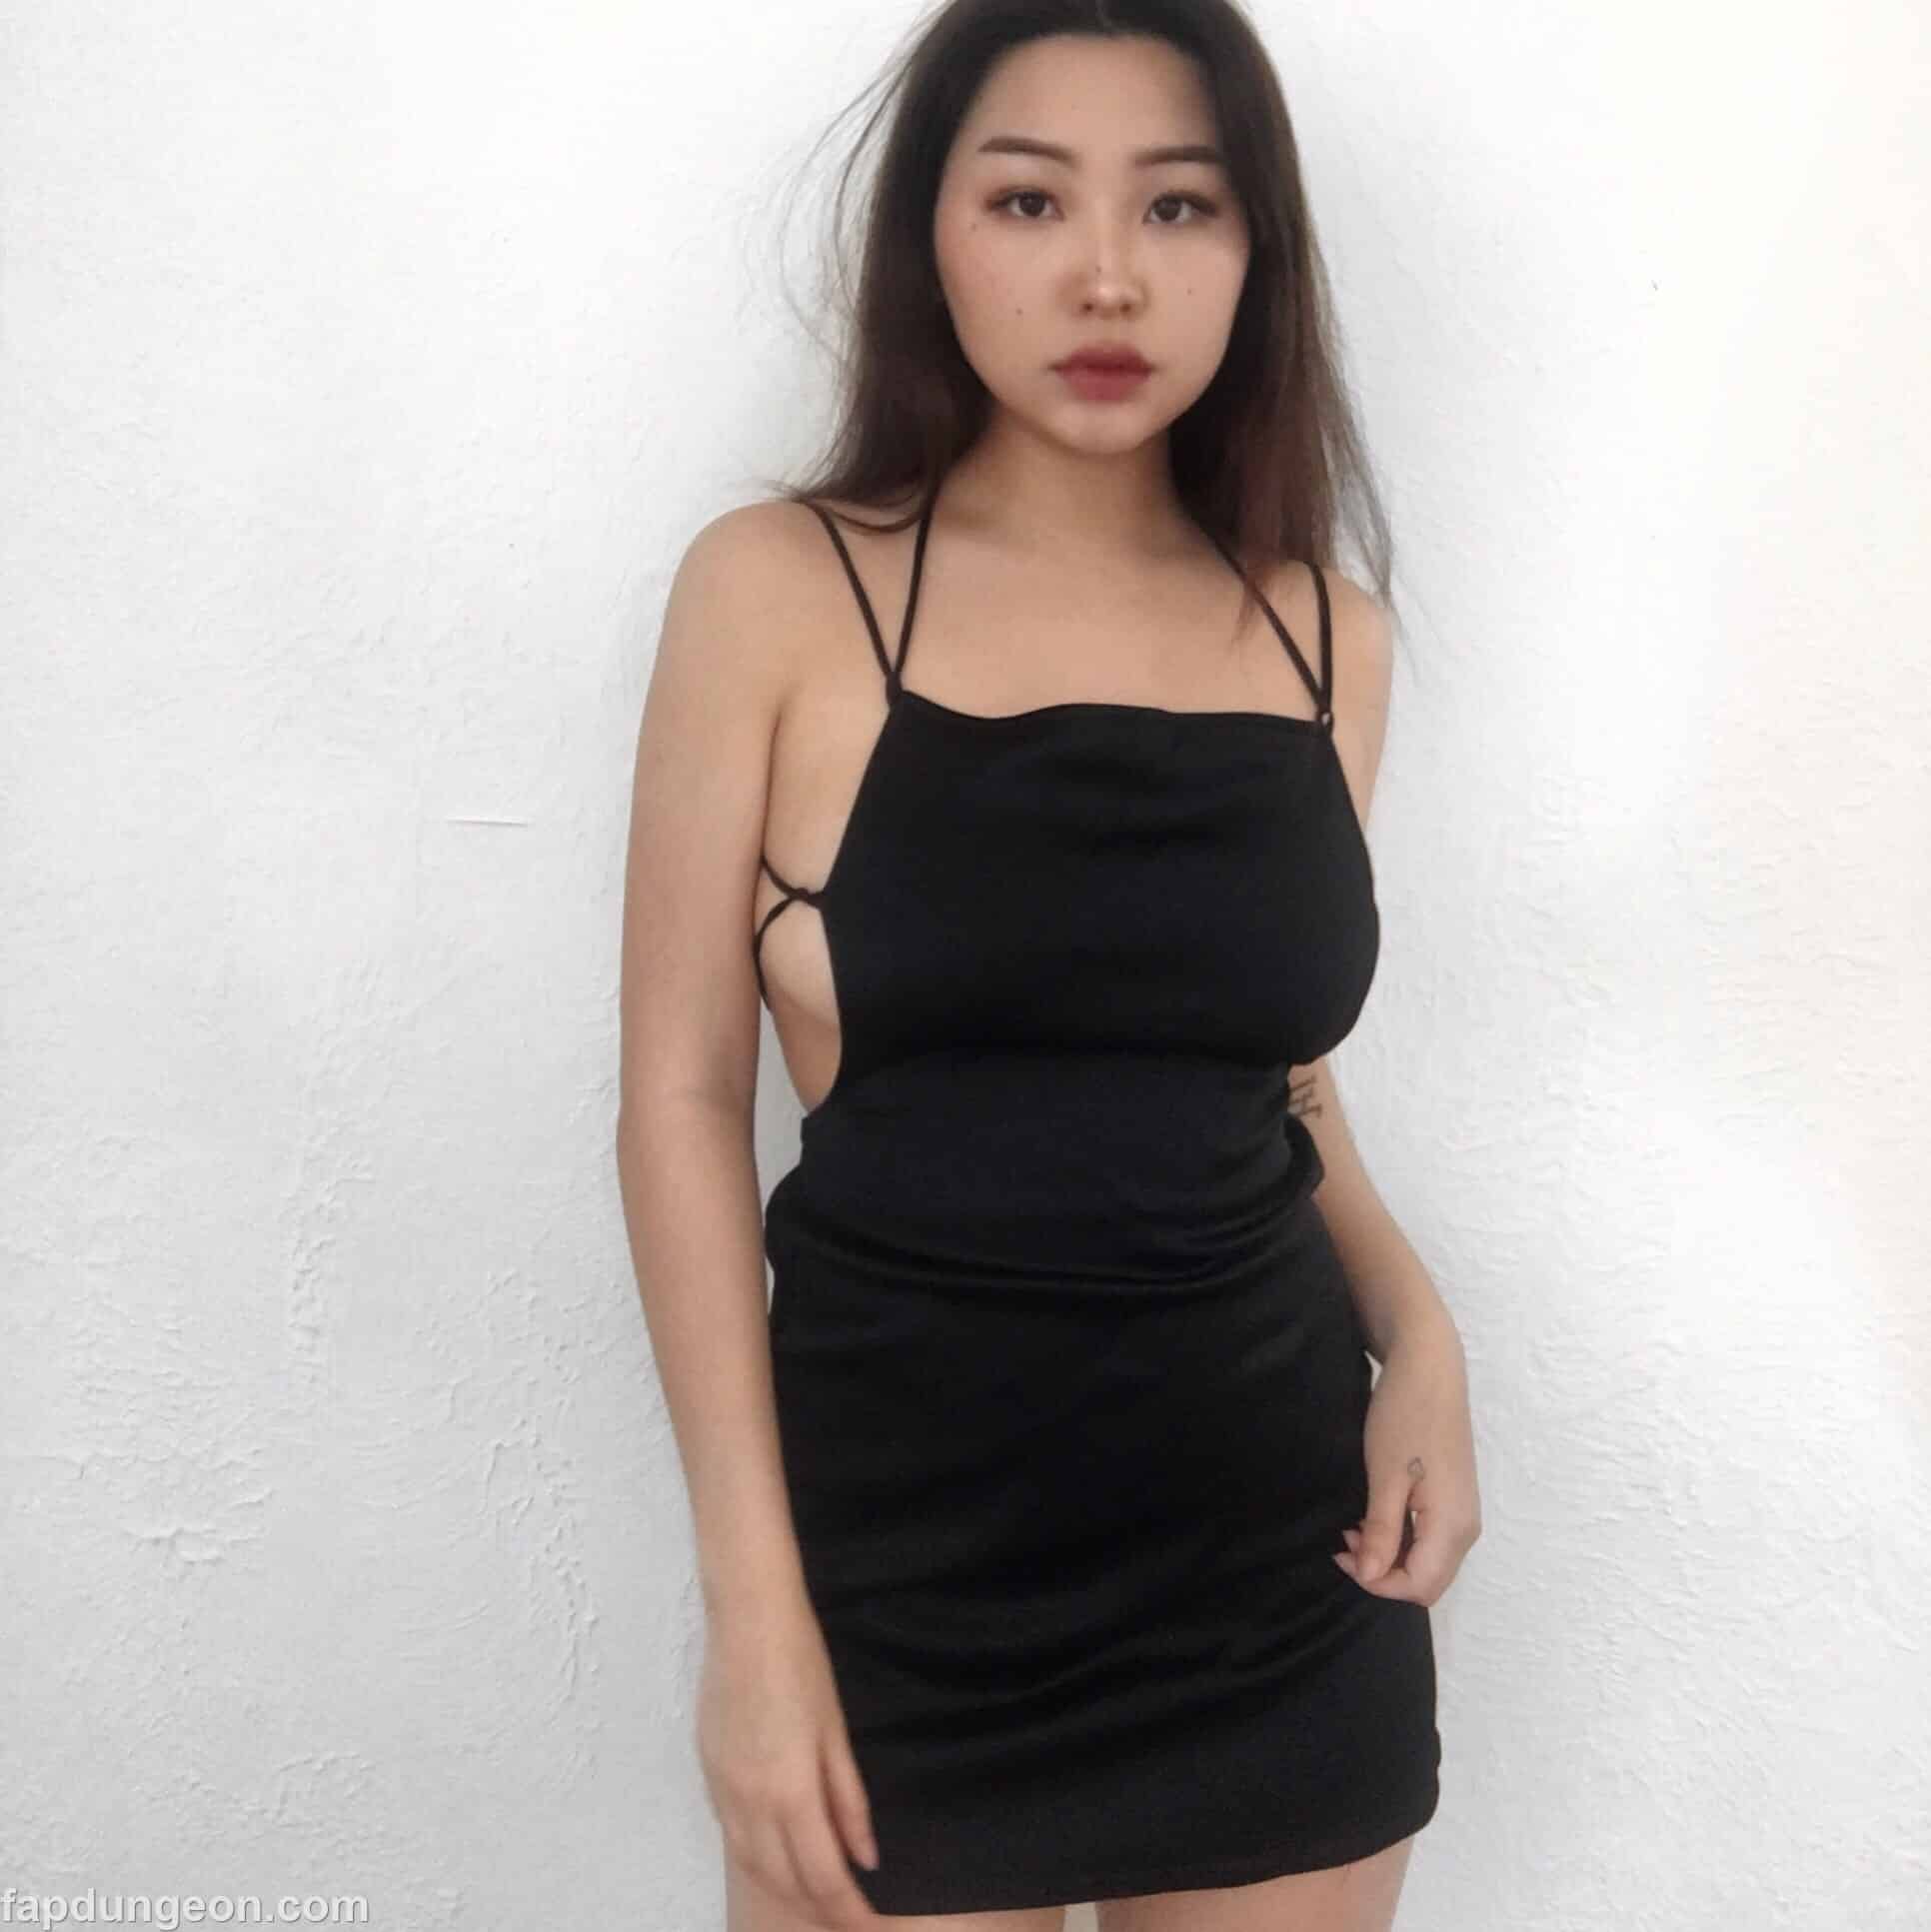 Nathaliewrth – Cute Gorgeous Asian 29